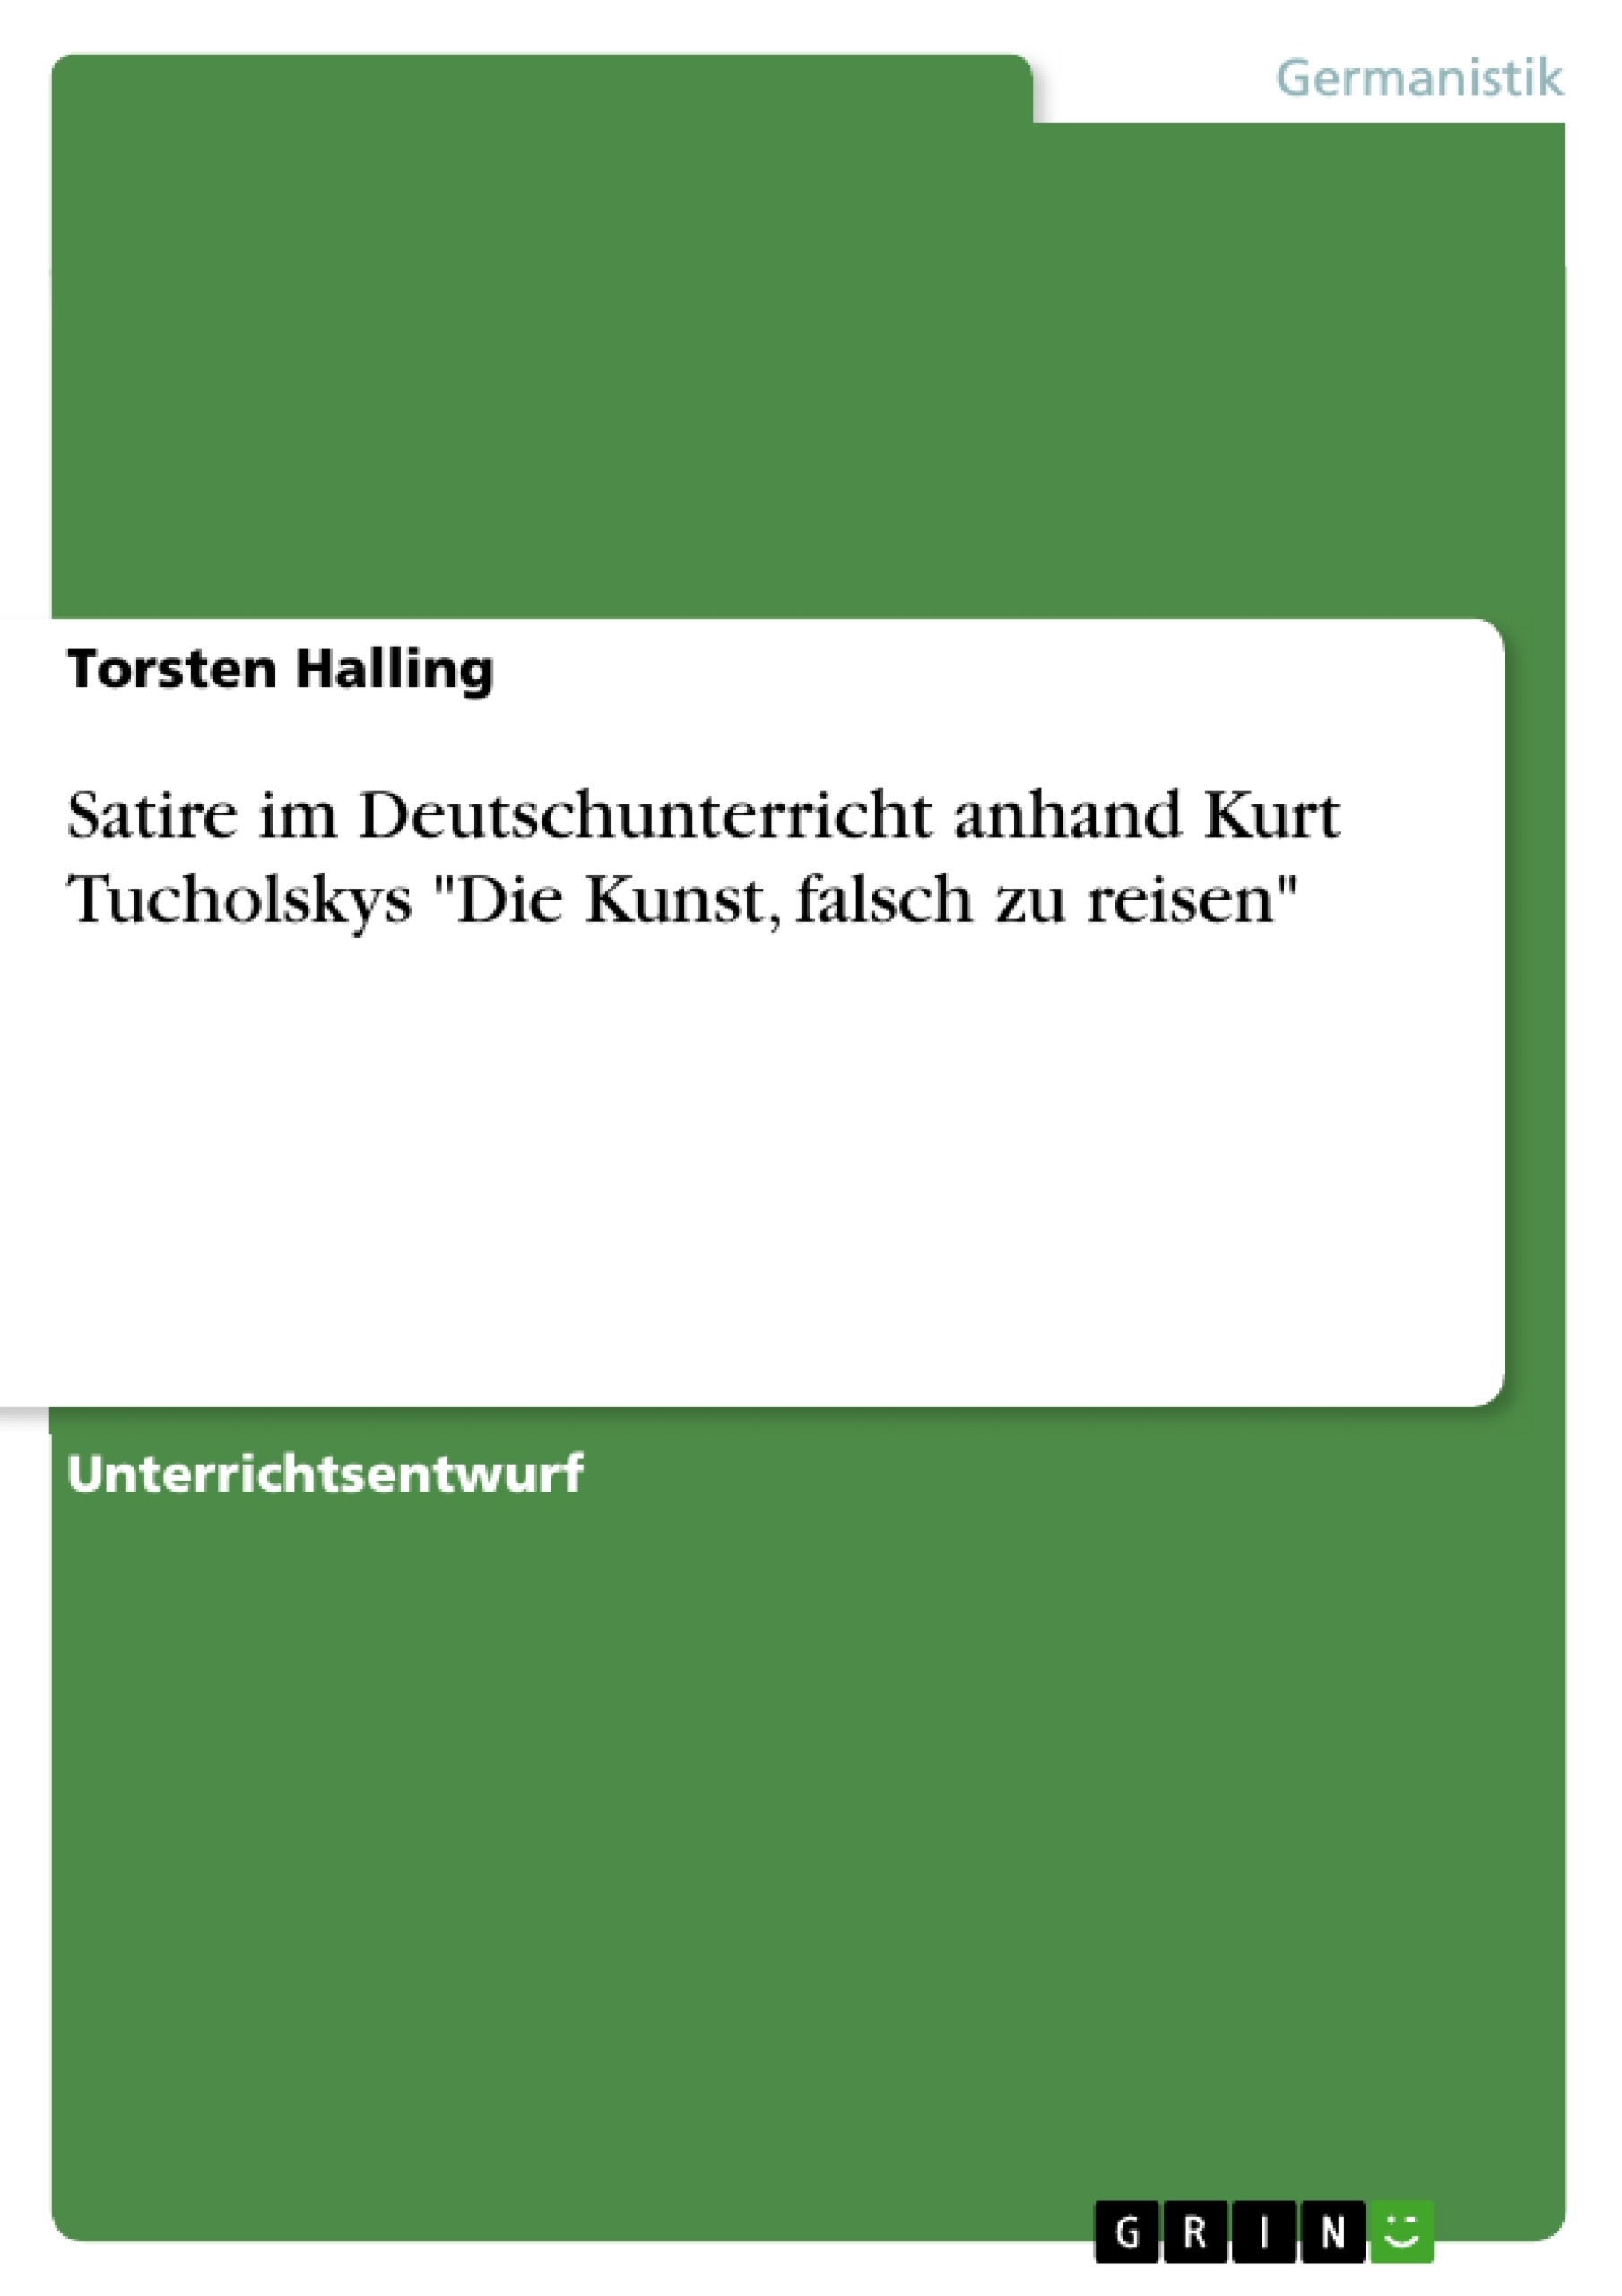 Title: Satire im Deutschunterricht anhand Kurt Tucholskys "Die Kunst, falsch zu reisen"